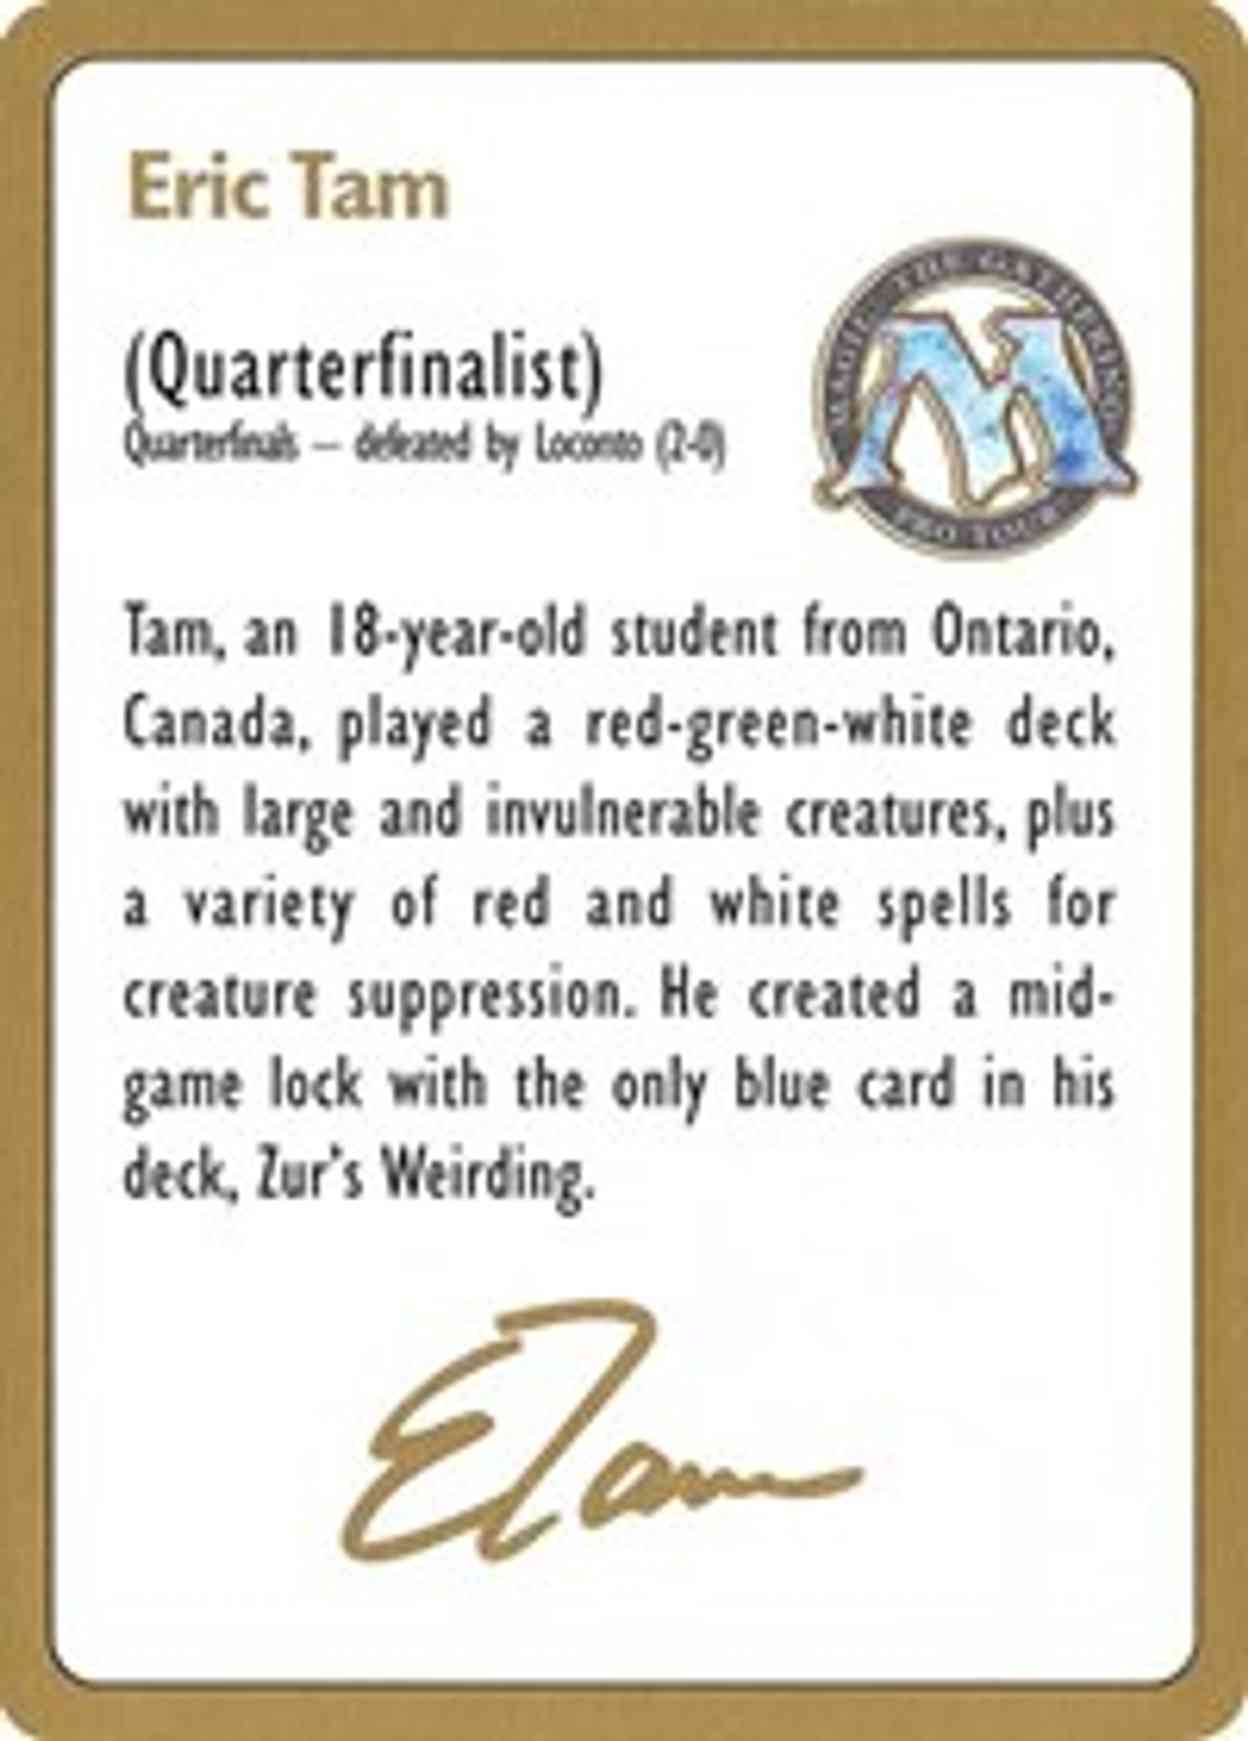 1996 Eric Tam Biography Card magic card front